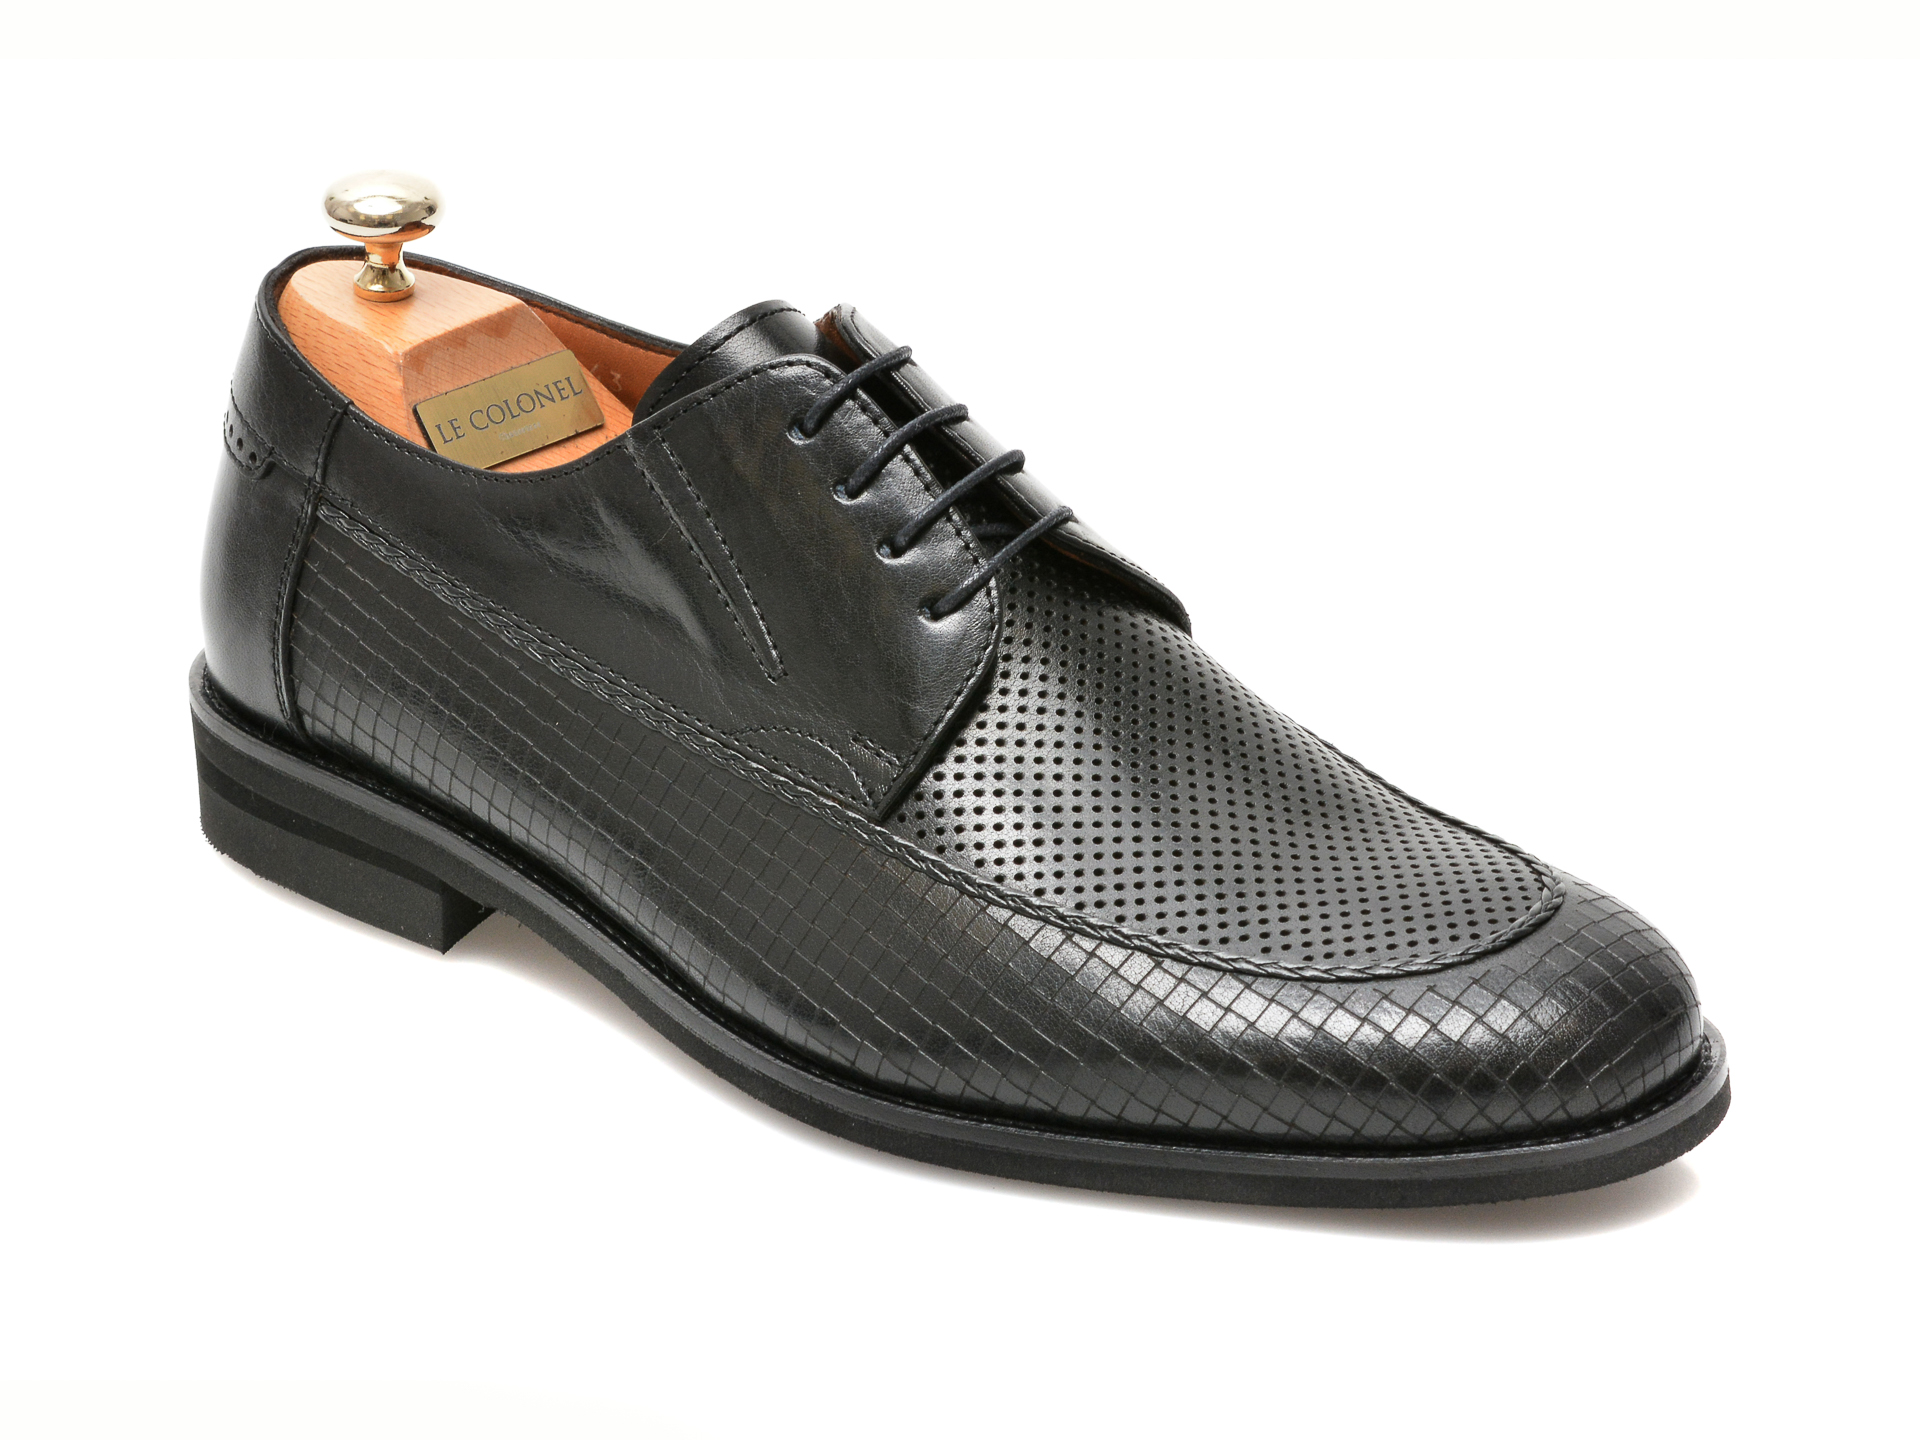 Pantofi LE COLONEL negri, 48856, din piele naturala Le Colonel